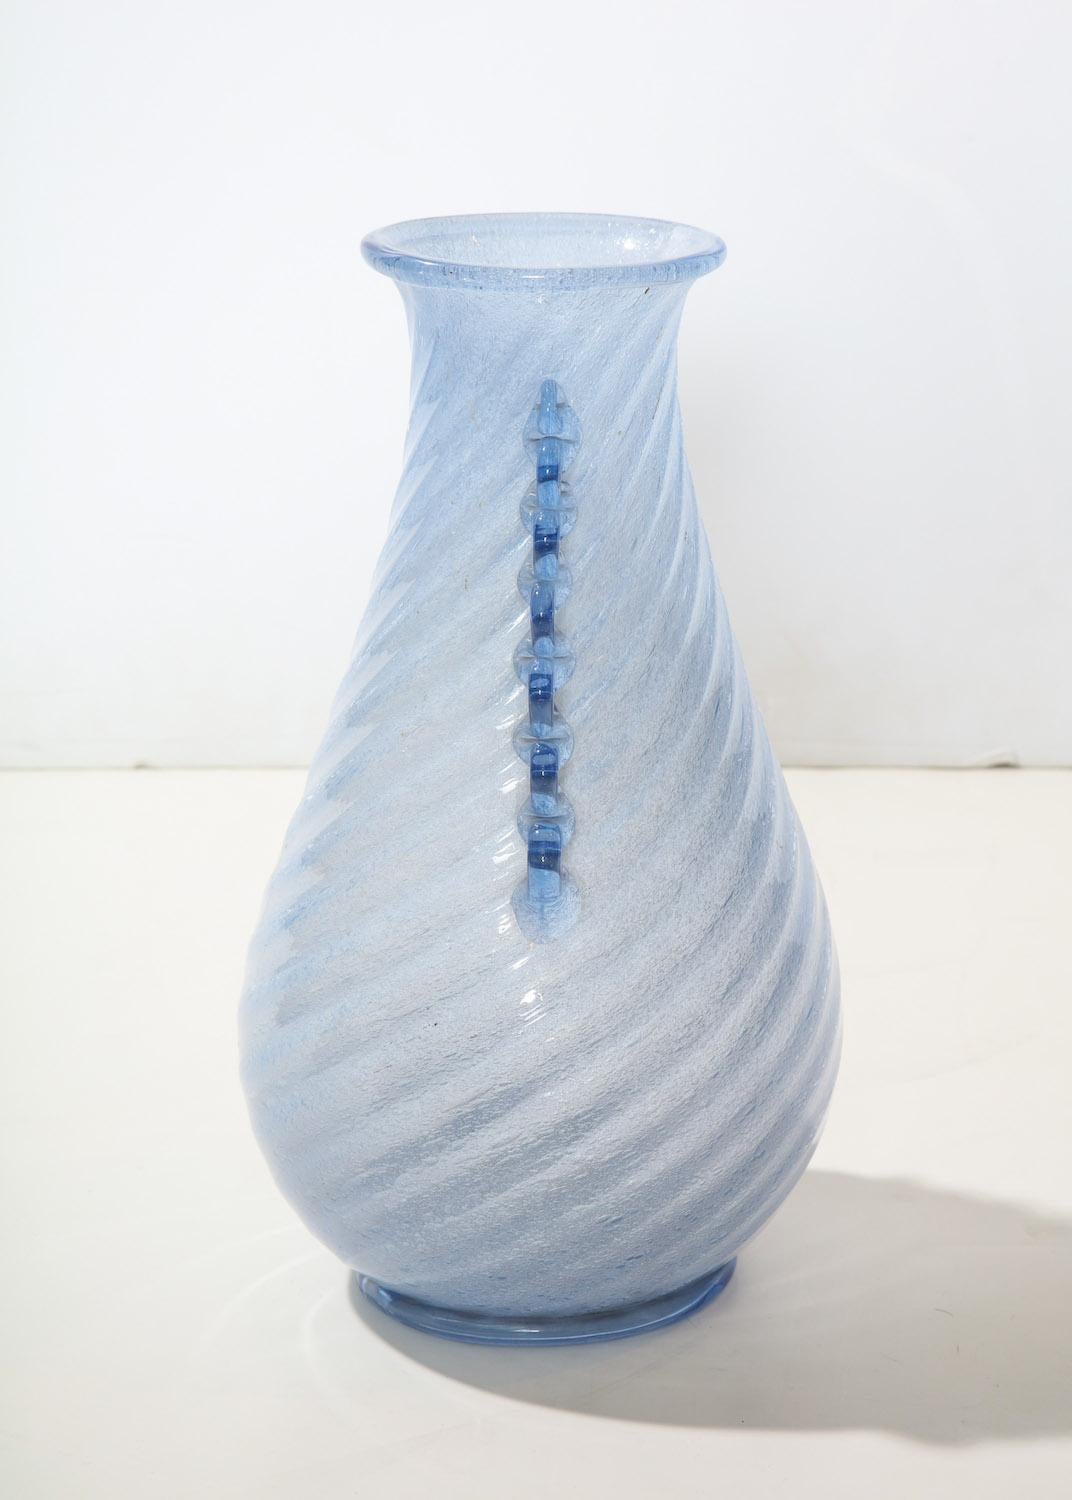 Modell #884, hergestellt von Aureliano Toso, auf der Insel Murano. Diese schöne Vase wurde von Dino Martens entworfen und besteht aus lavendelfarbenem Glas mit gewirbelten Rippen und applizierten Seitendekorationen und Fuß.